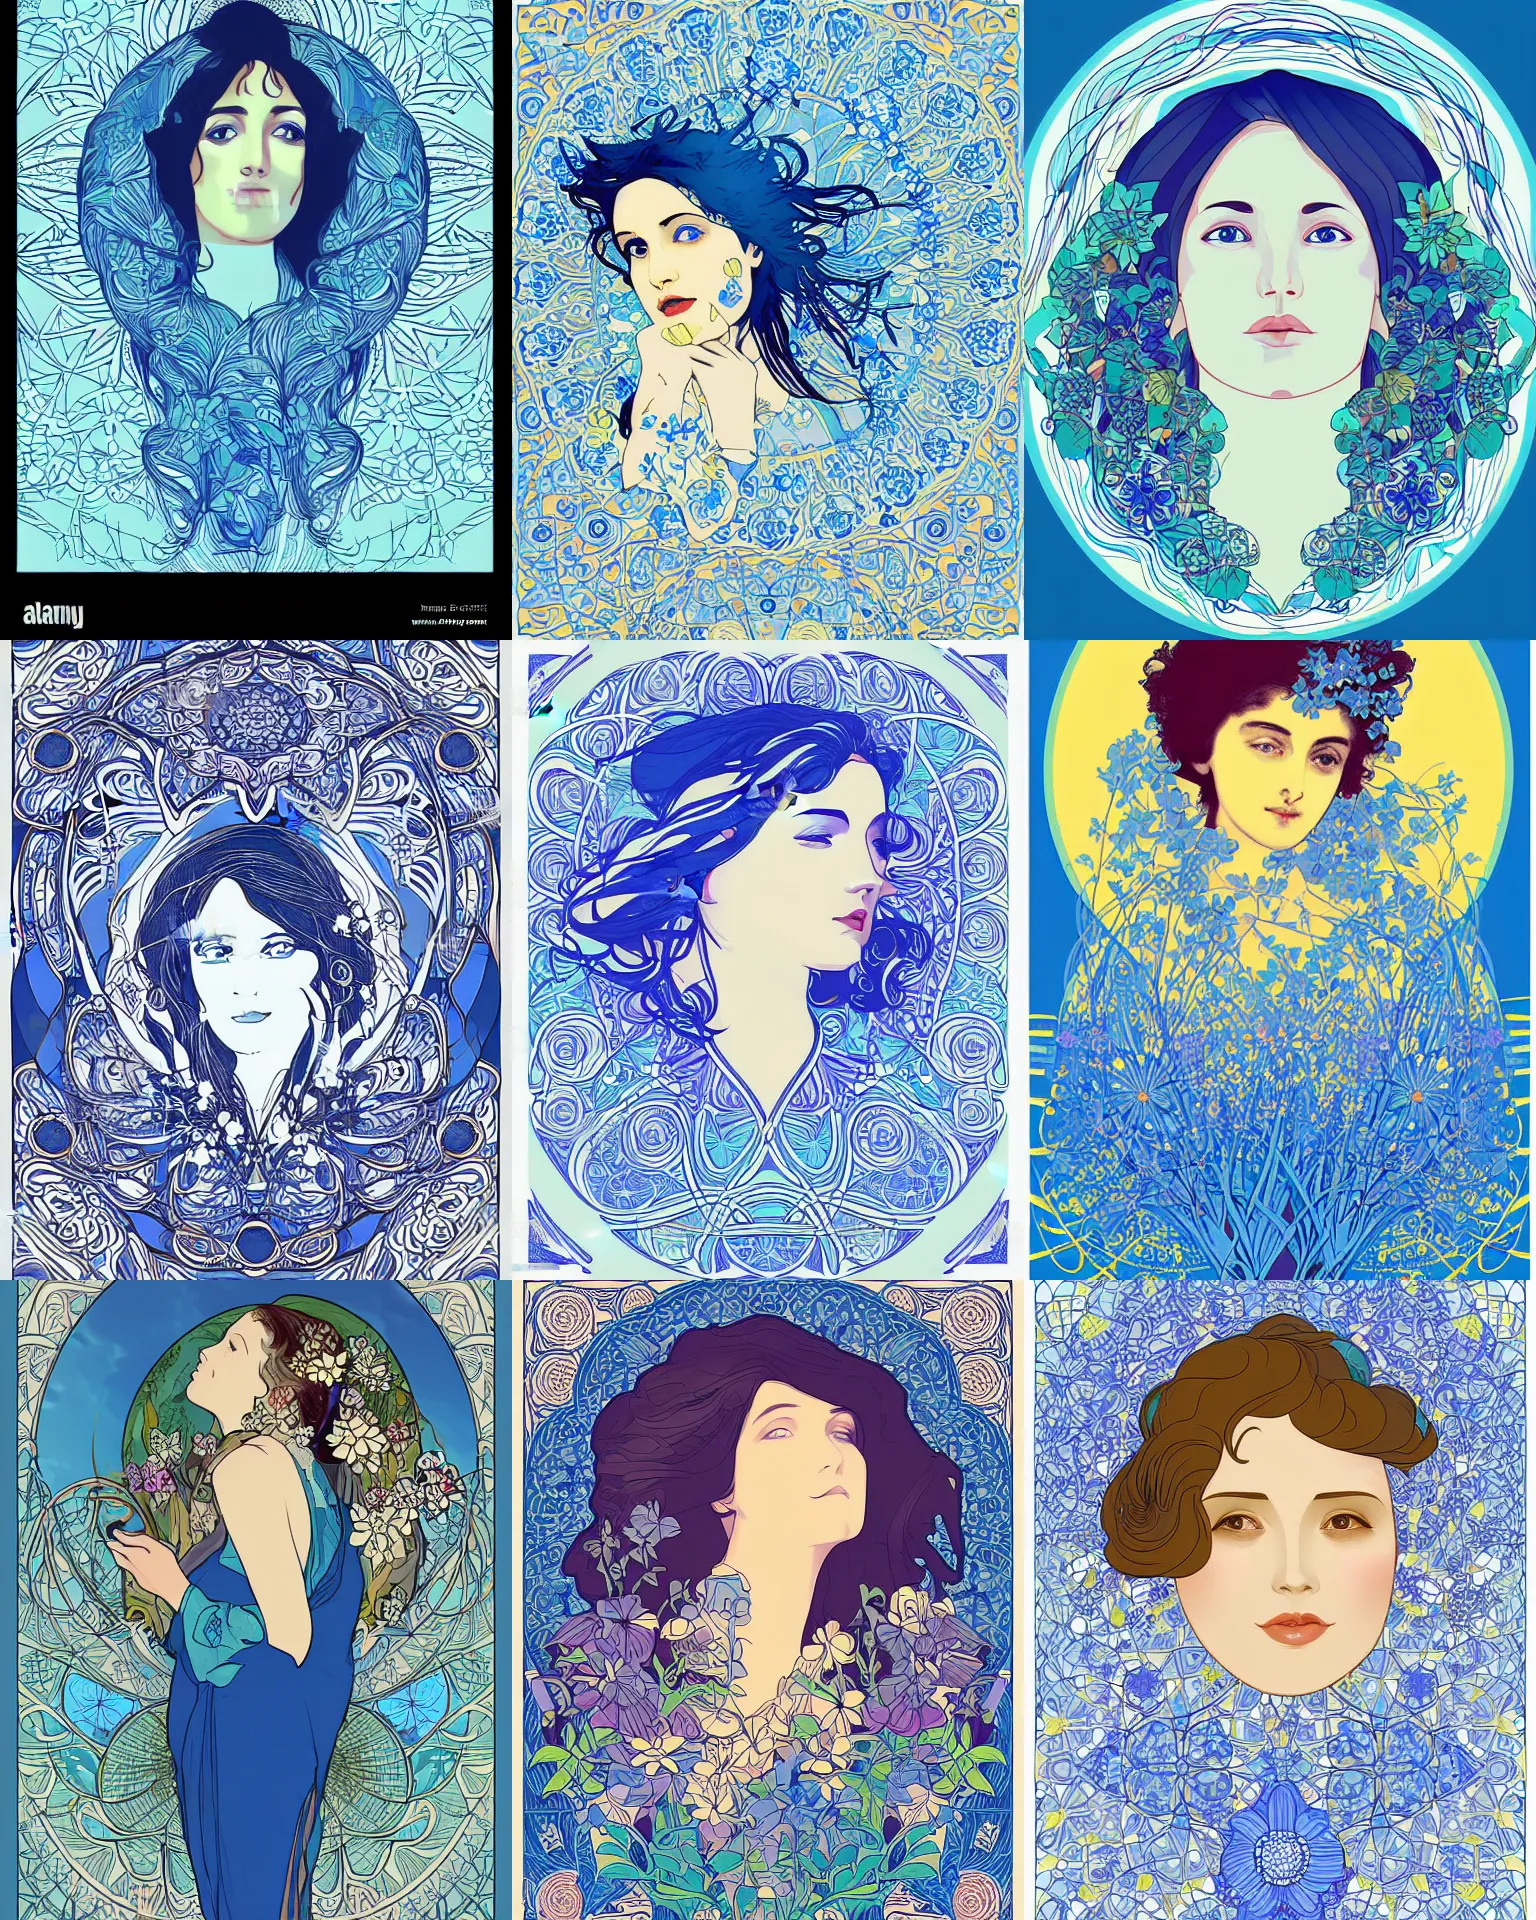 Prompt: portrait of a dreamer, blue - petals, summer sky, vector art by alphonese mucha